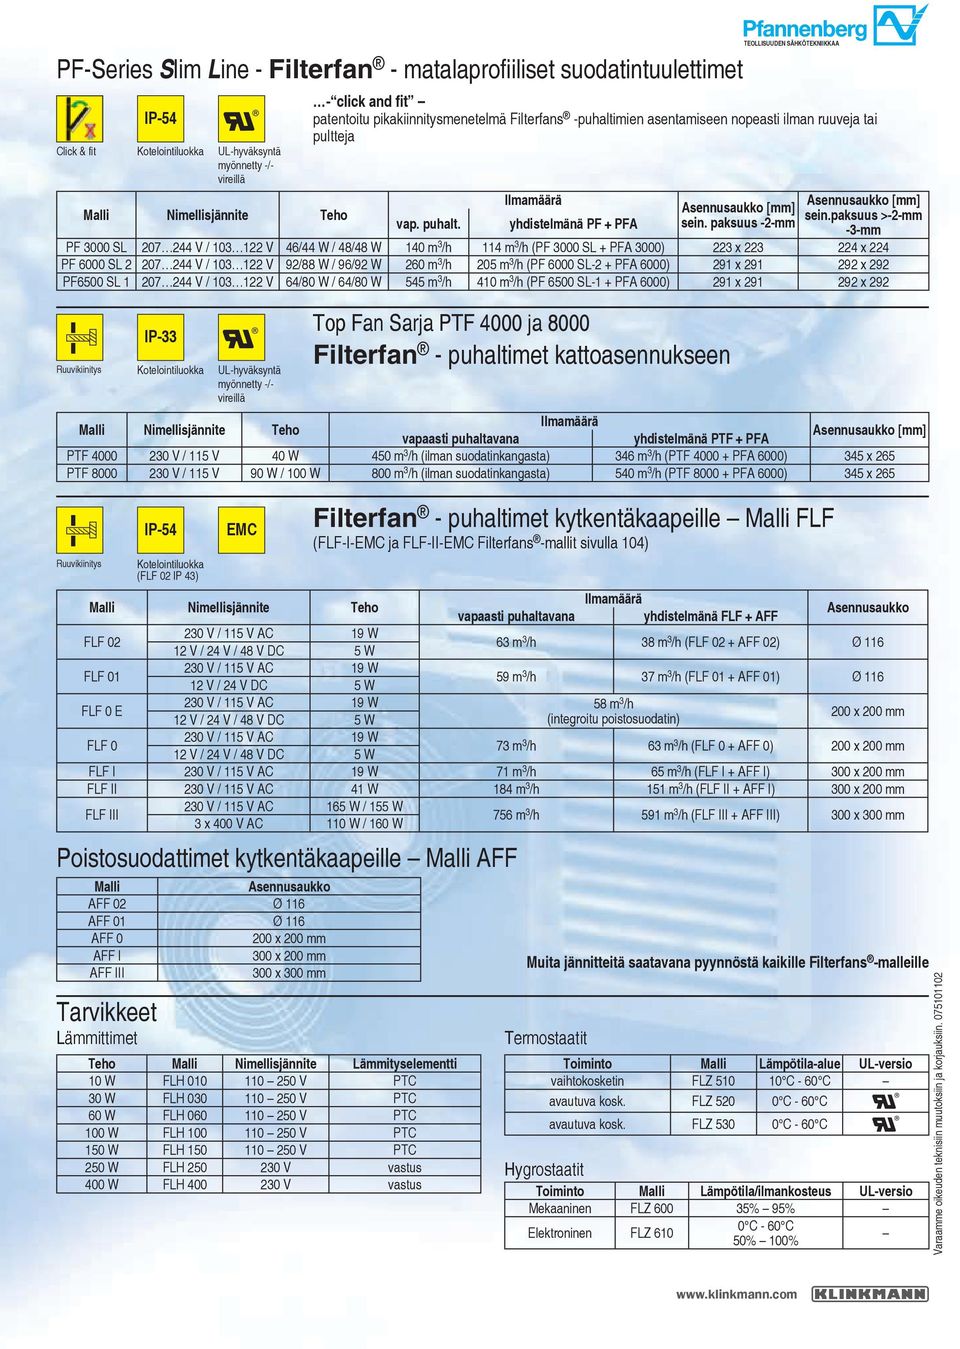 yhdistelmänä PF + PFA Top Fan Sarja PTF 4000 ja 8000 Filterfan - puhaltimet kattoasennukseen Filterfan - puhaltimet kytkentäkaapeille FLF (FLF-I- ja FLF-II- Filterfans -mallit sivulla 104)